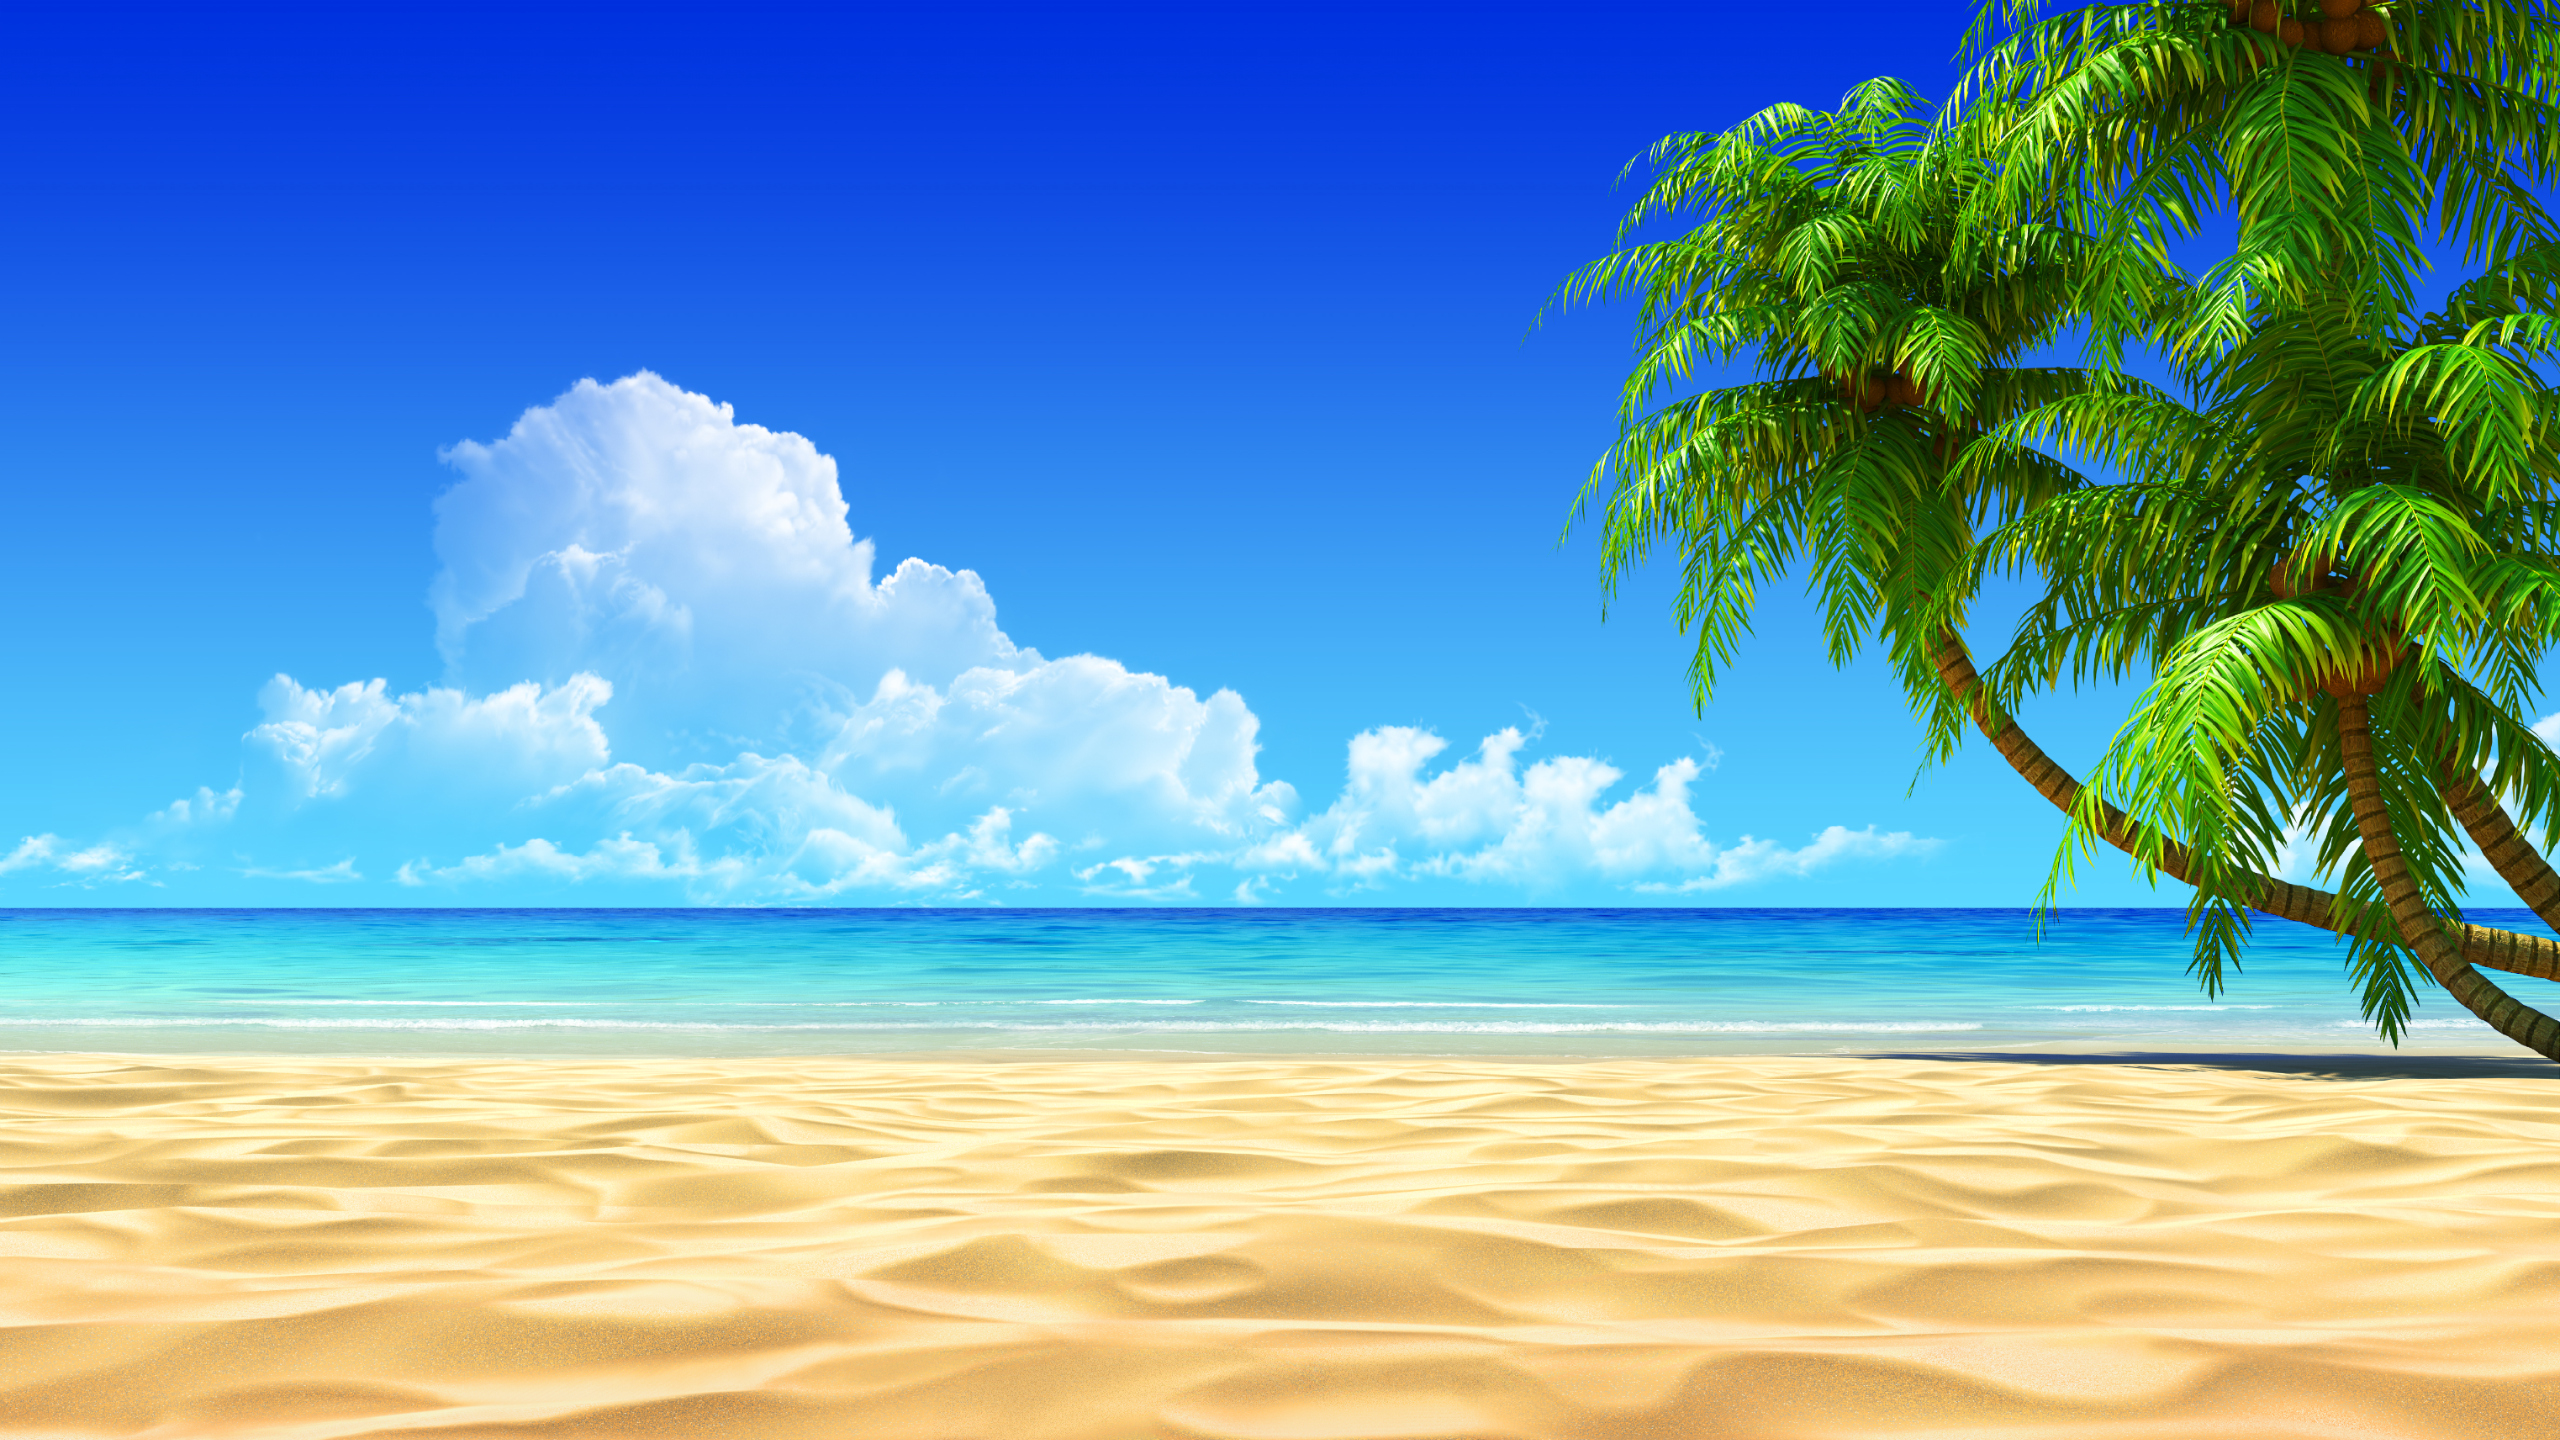 widescreen tropical beach image